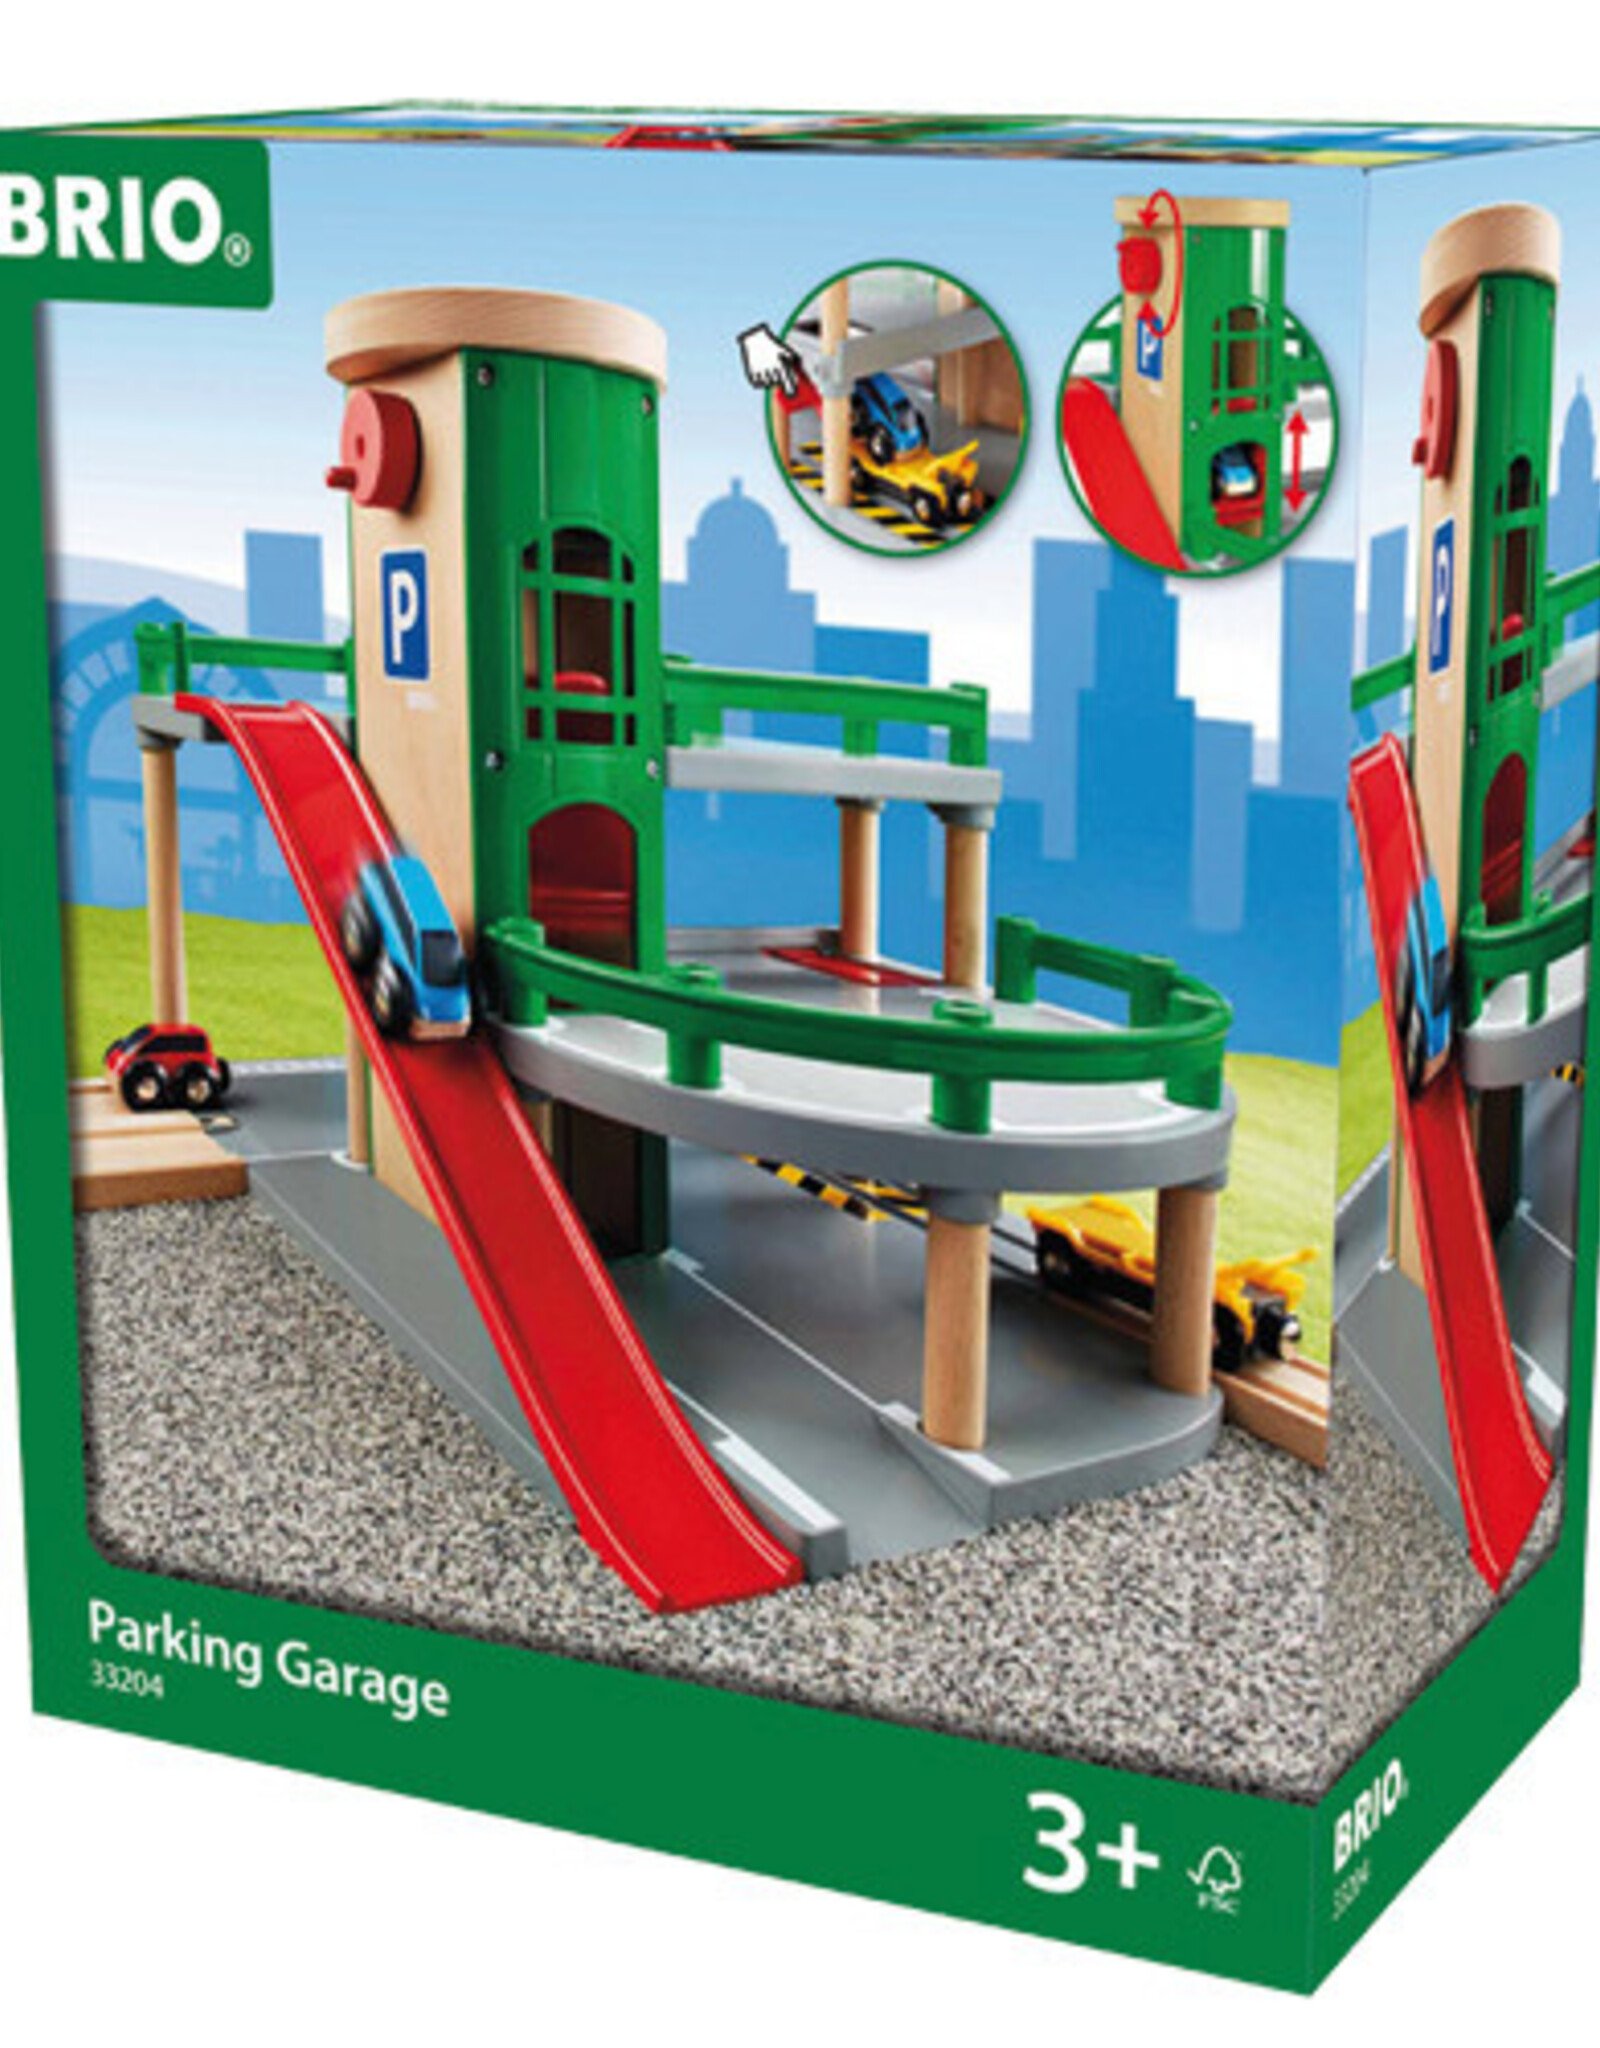 BRIO CORP Parking Garage